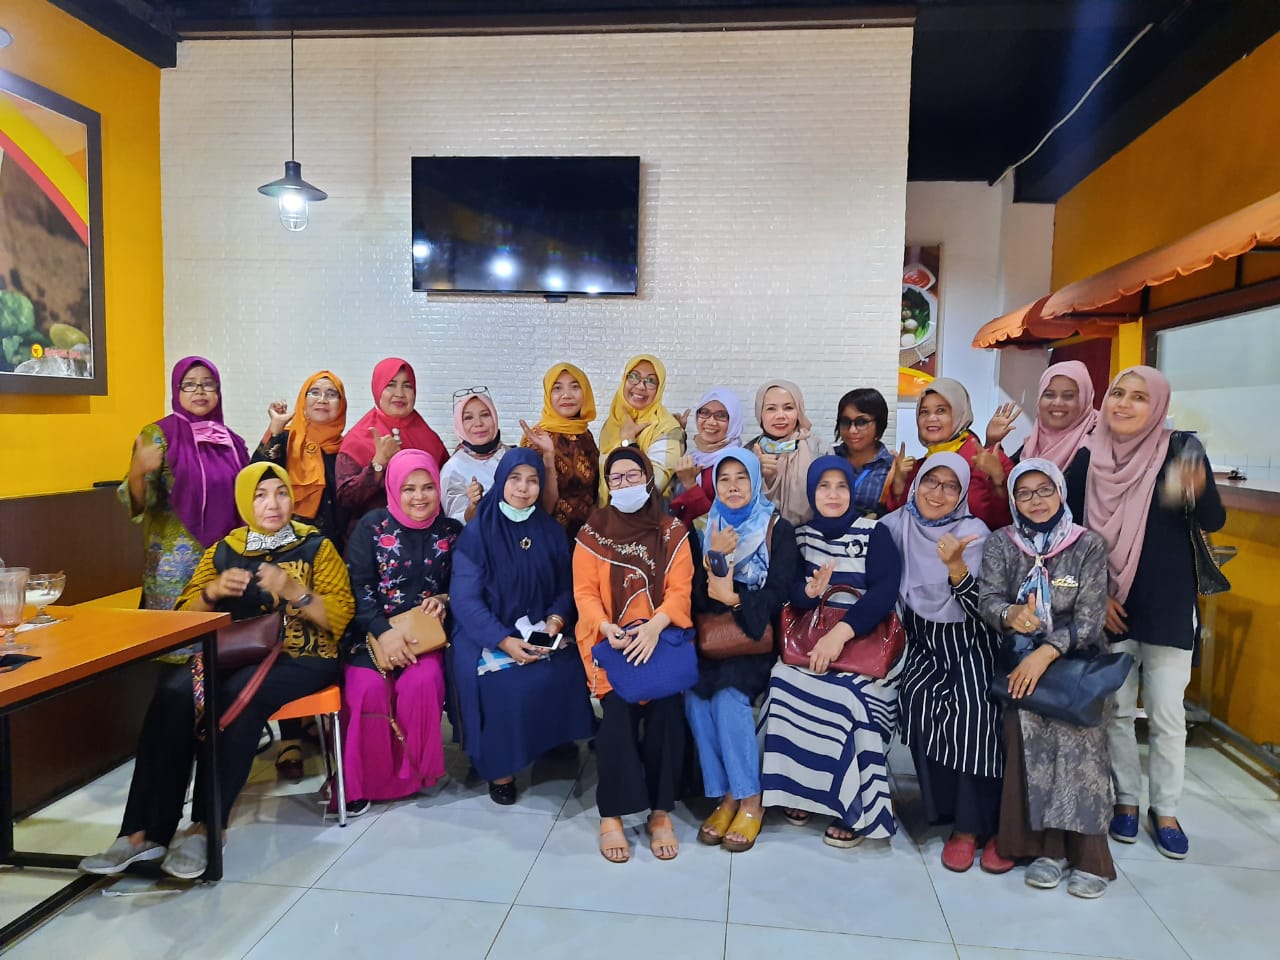 Pengurus dan anggota IKWI Sumbar, dalam pertemuan silaturahim setelah vakum beberapa bulan akibat pandemi Covid-19, di Padang, Sabtu (18/7/2020).